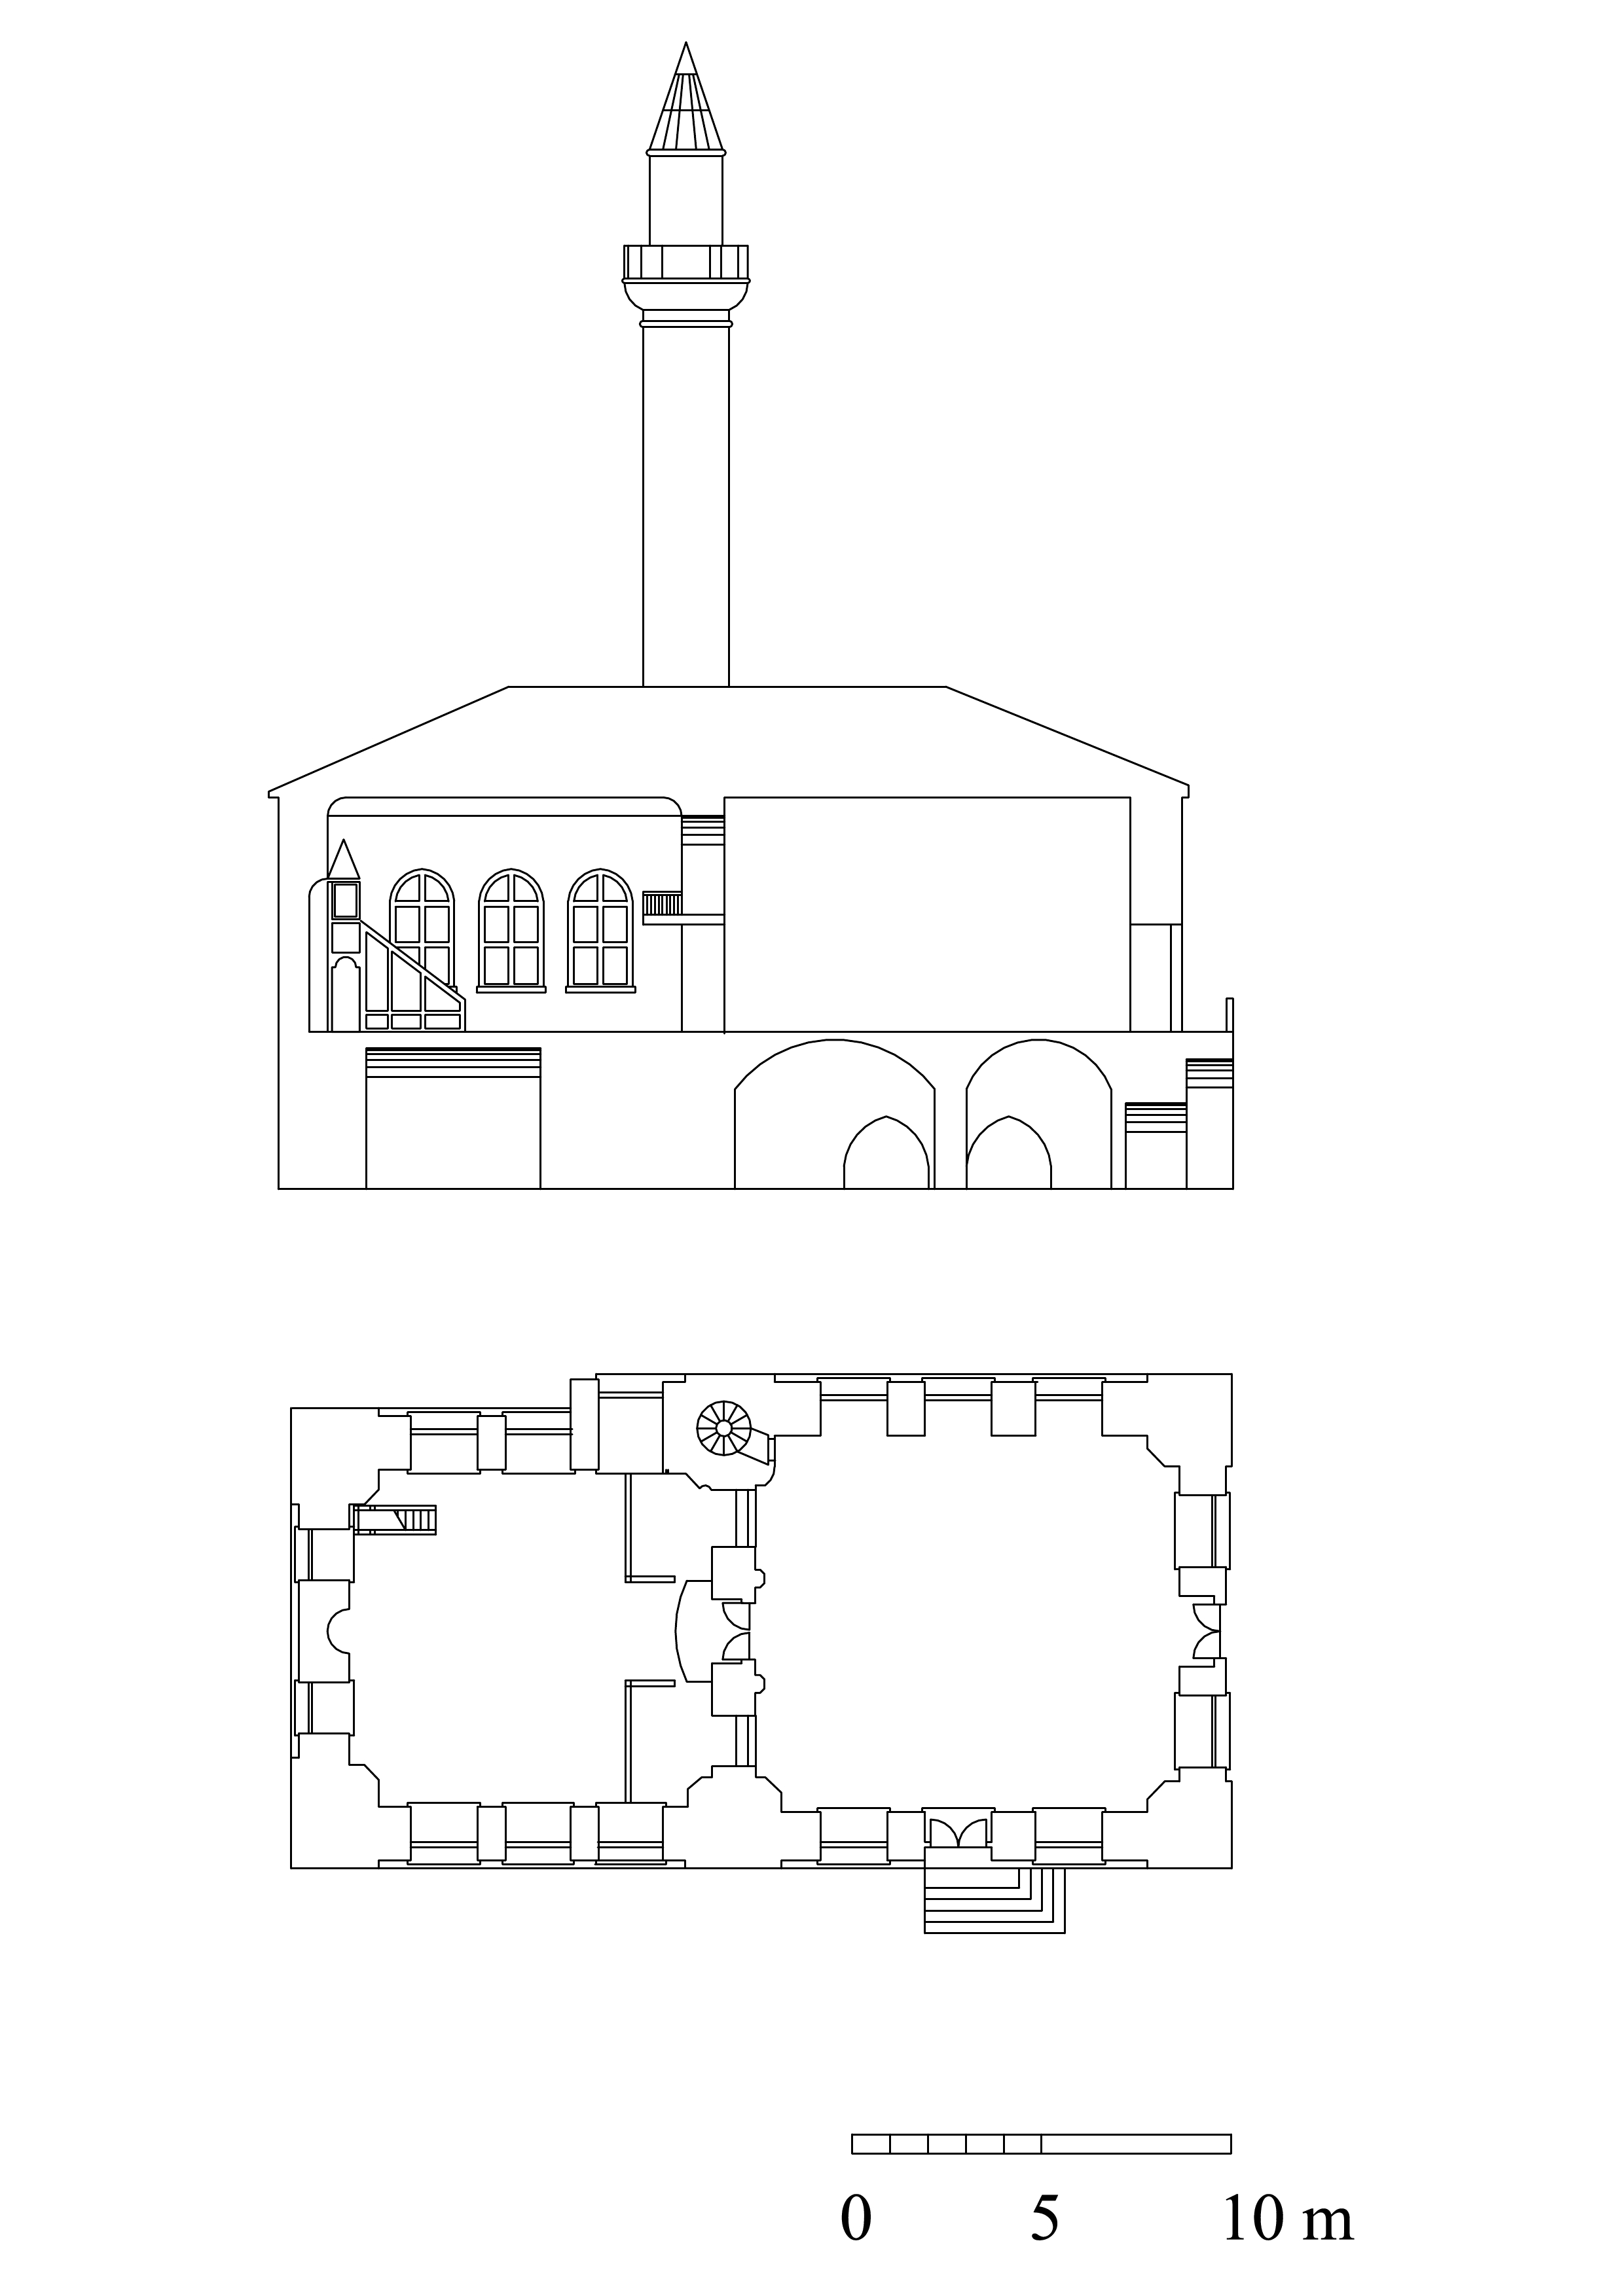 Kapı Ağası Mahmut Ağa Camii - Floor plan and cross-section